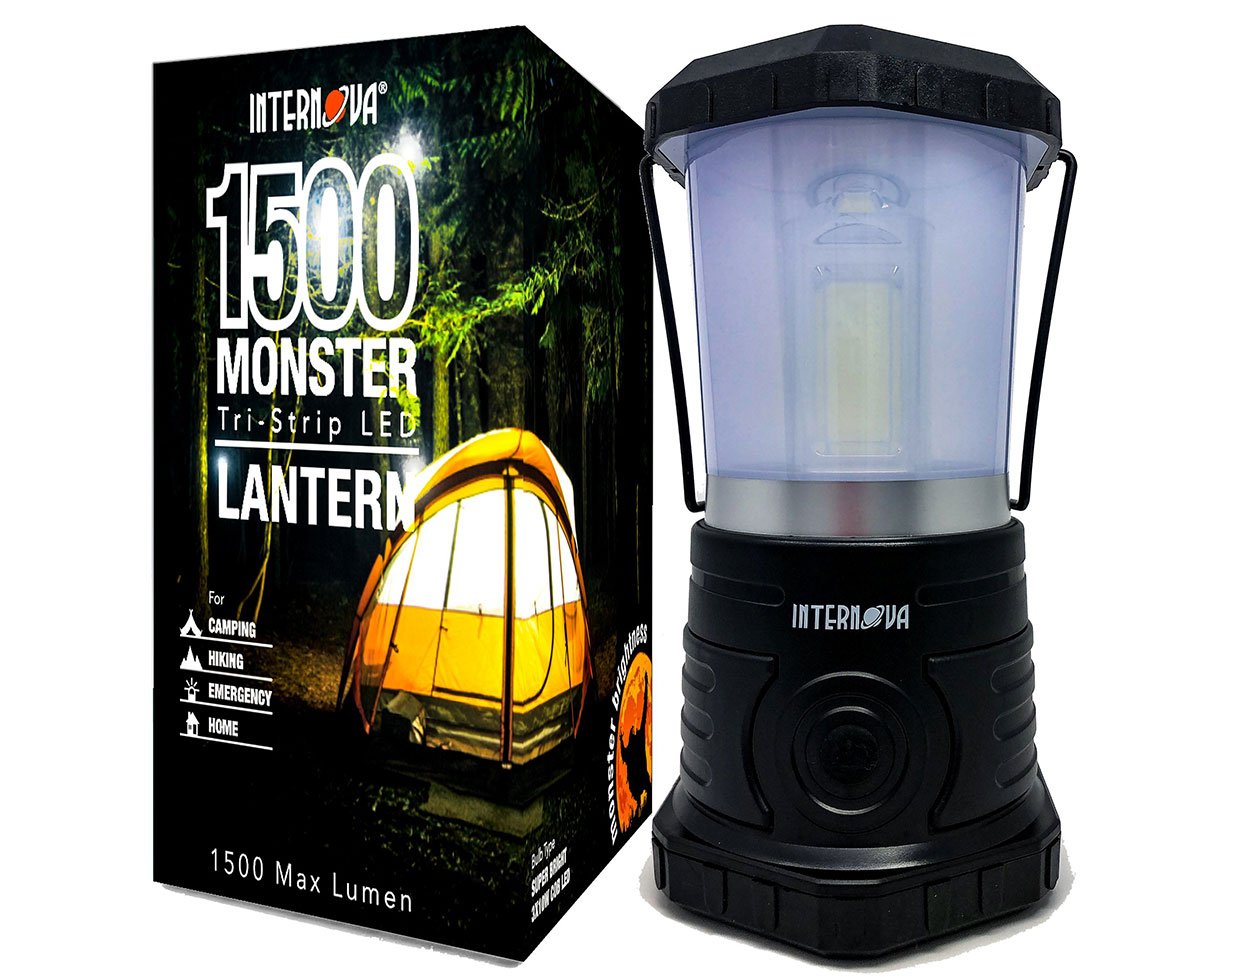 Internova Monster LED Lantern